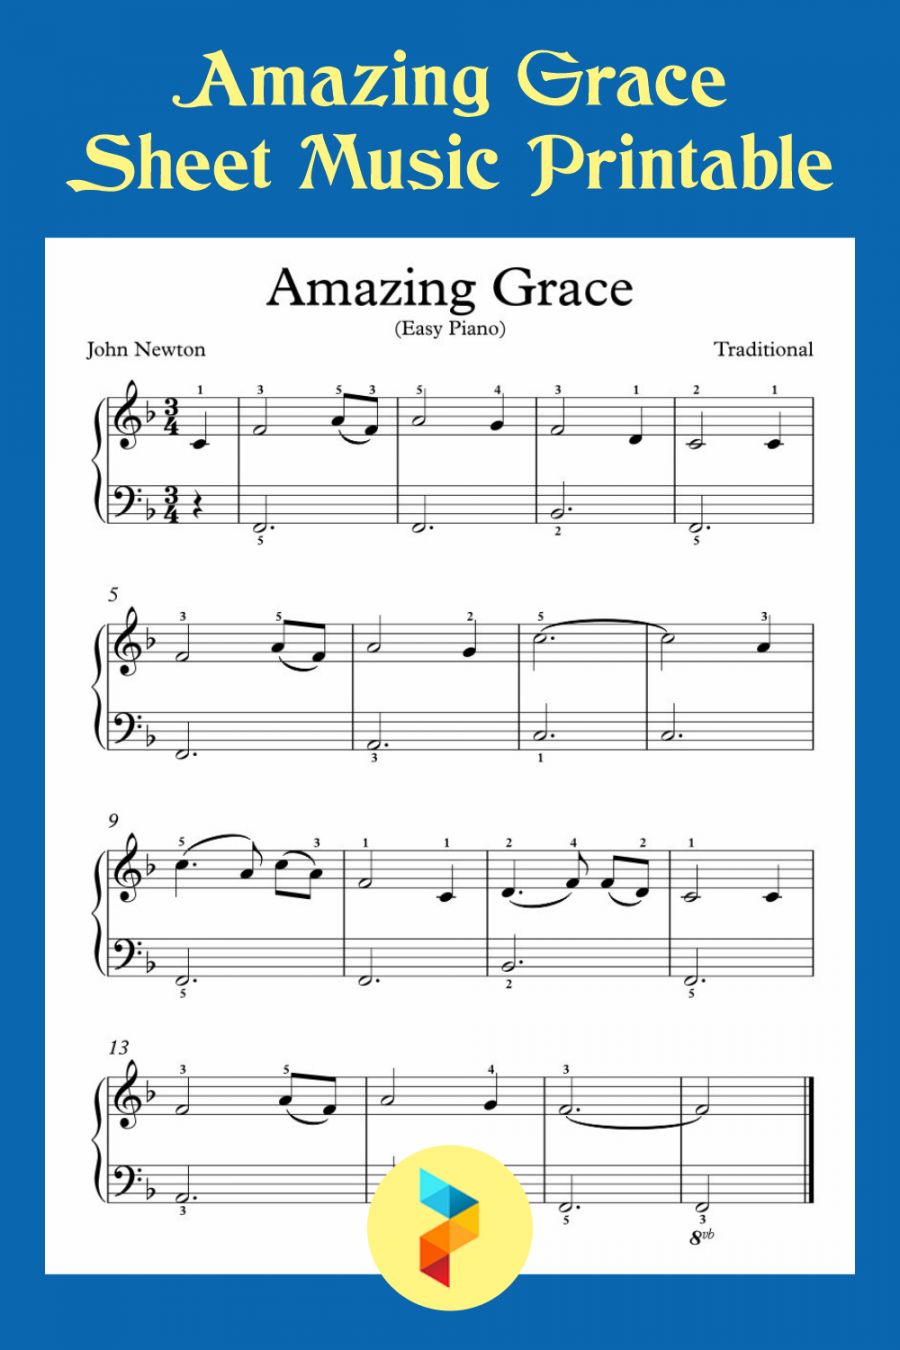 Free Printable Sheet Music For Piano - Printable -  Best Amazing Grace Sheet Music Printable - printablee